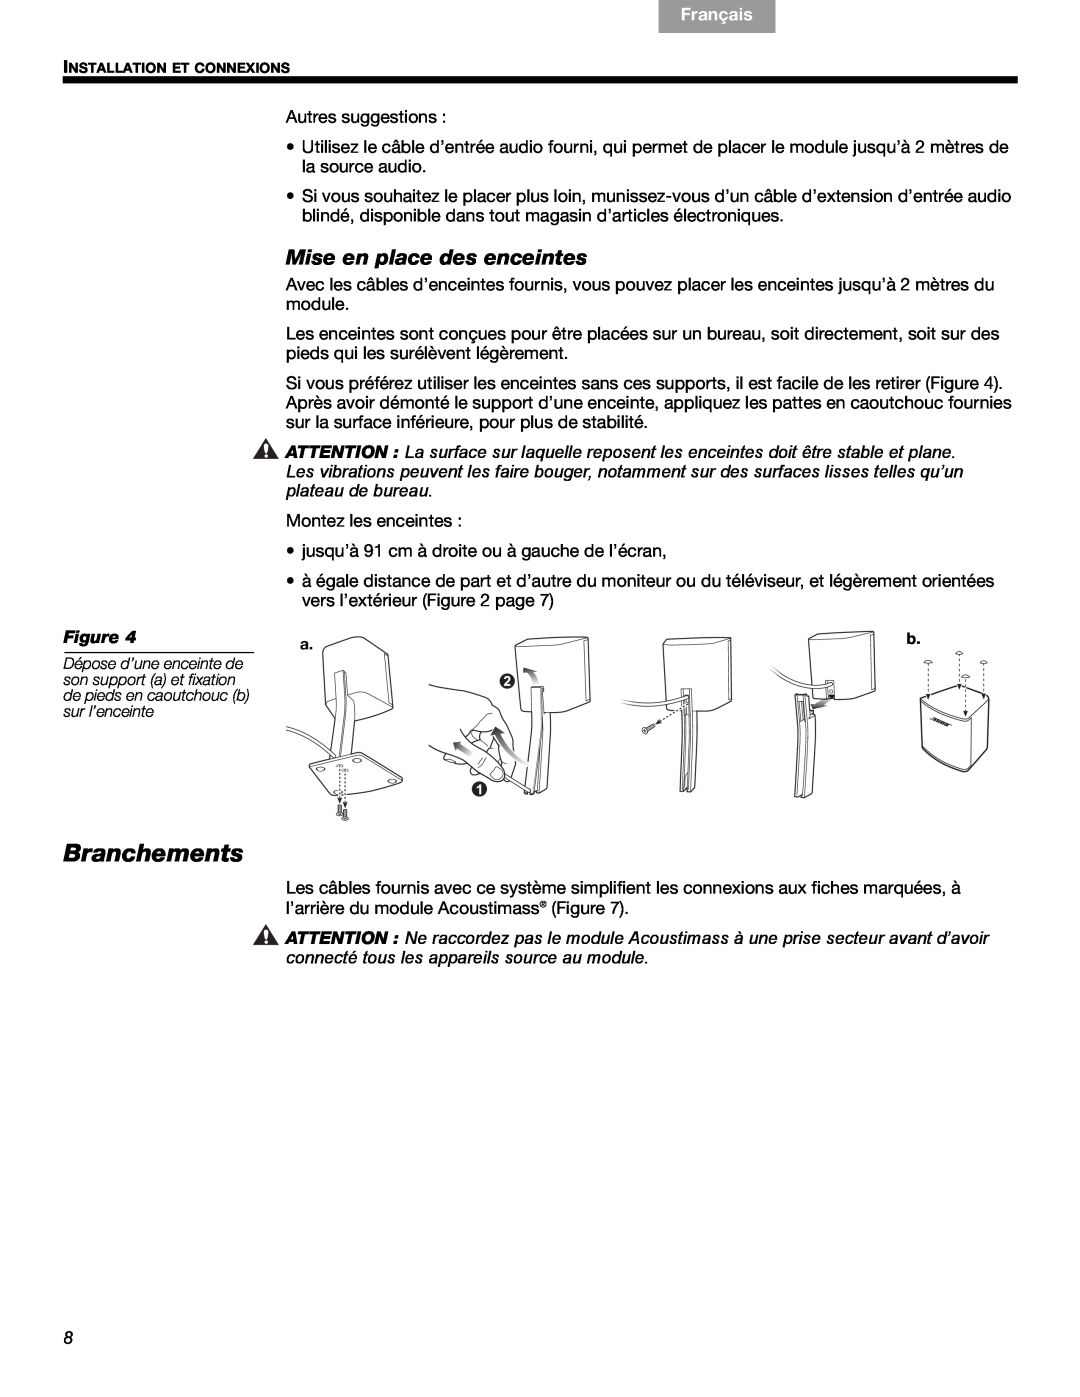 Bose 3 manual Branchements, Mise en place des enceintes, Français, Español English 